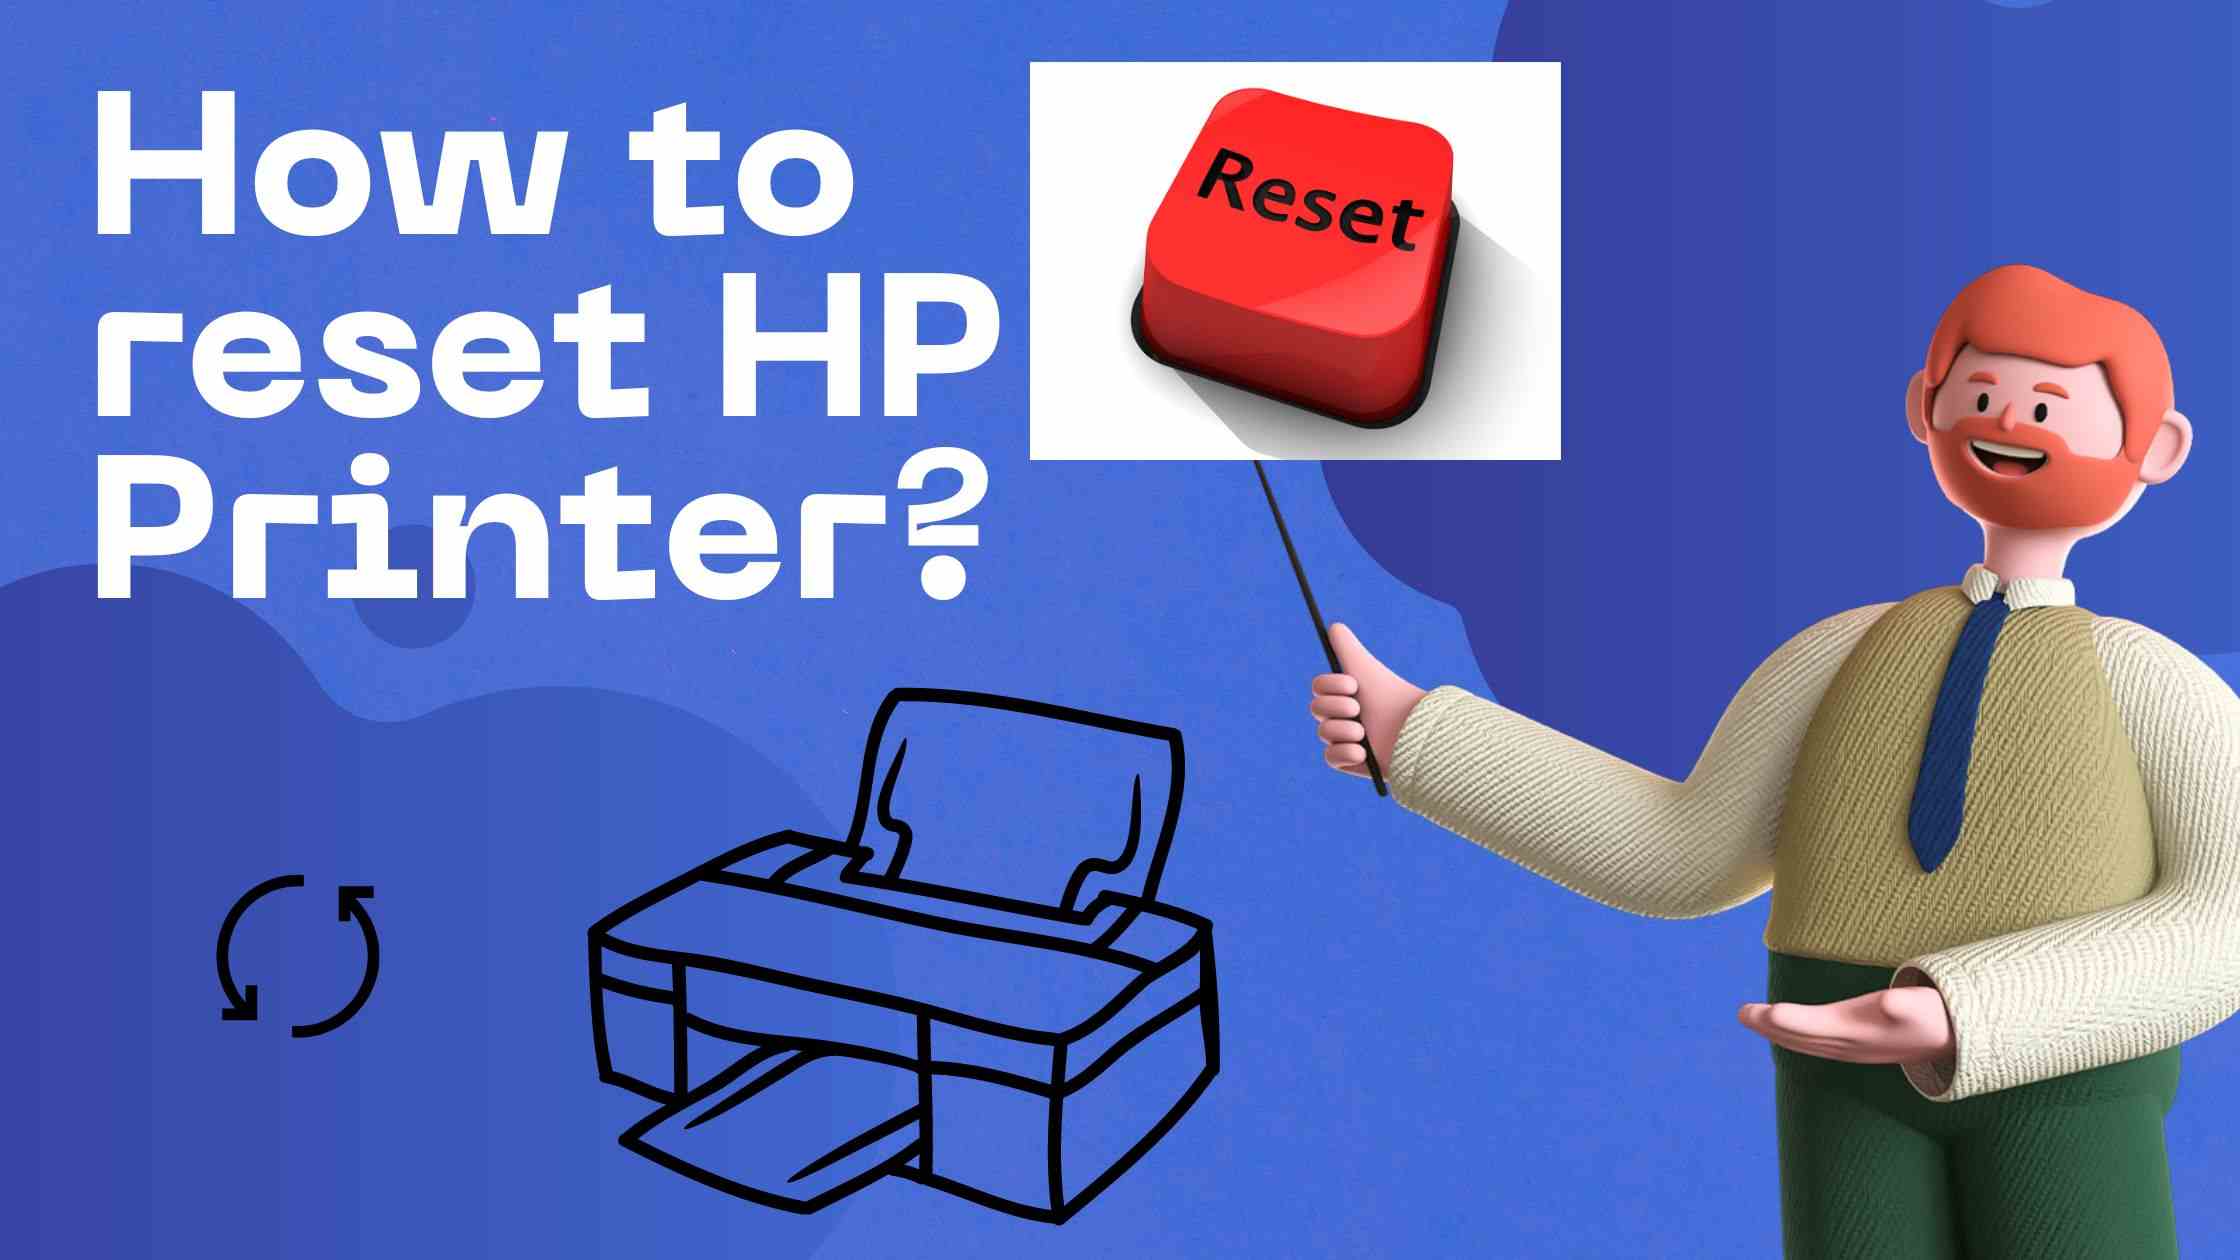 Reset HP Printer